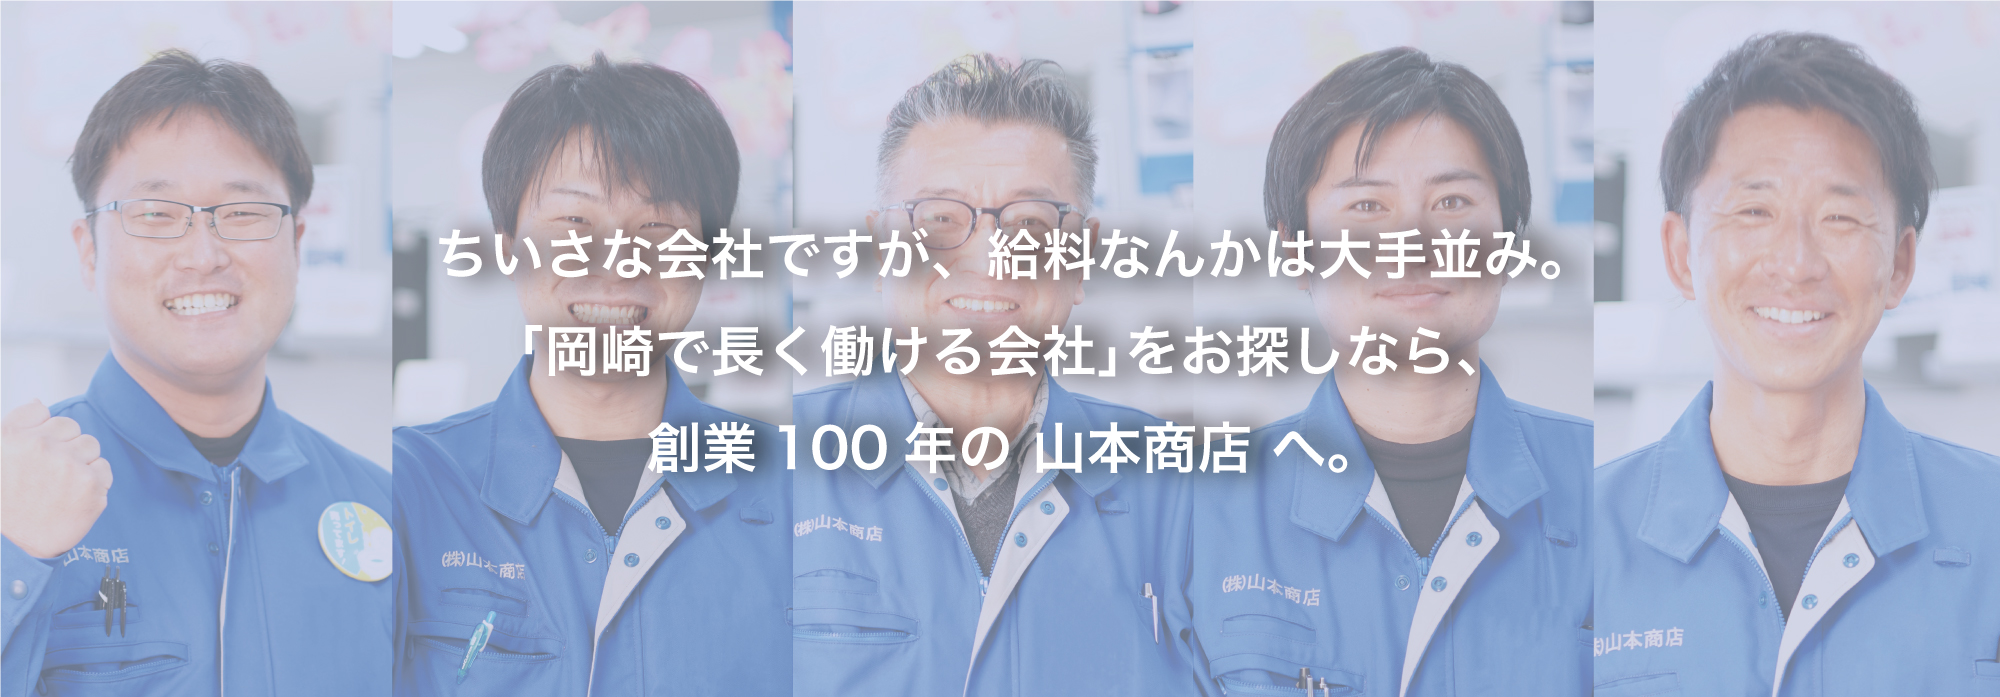 ちいさな会社ですが､給料なんかは大手並み。｢岡崎で長く働ける会社｣をお探しなら､創業100年の 山本商店 へ。